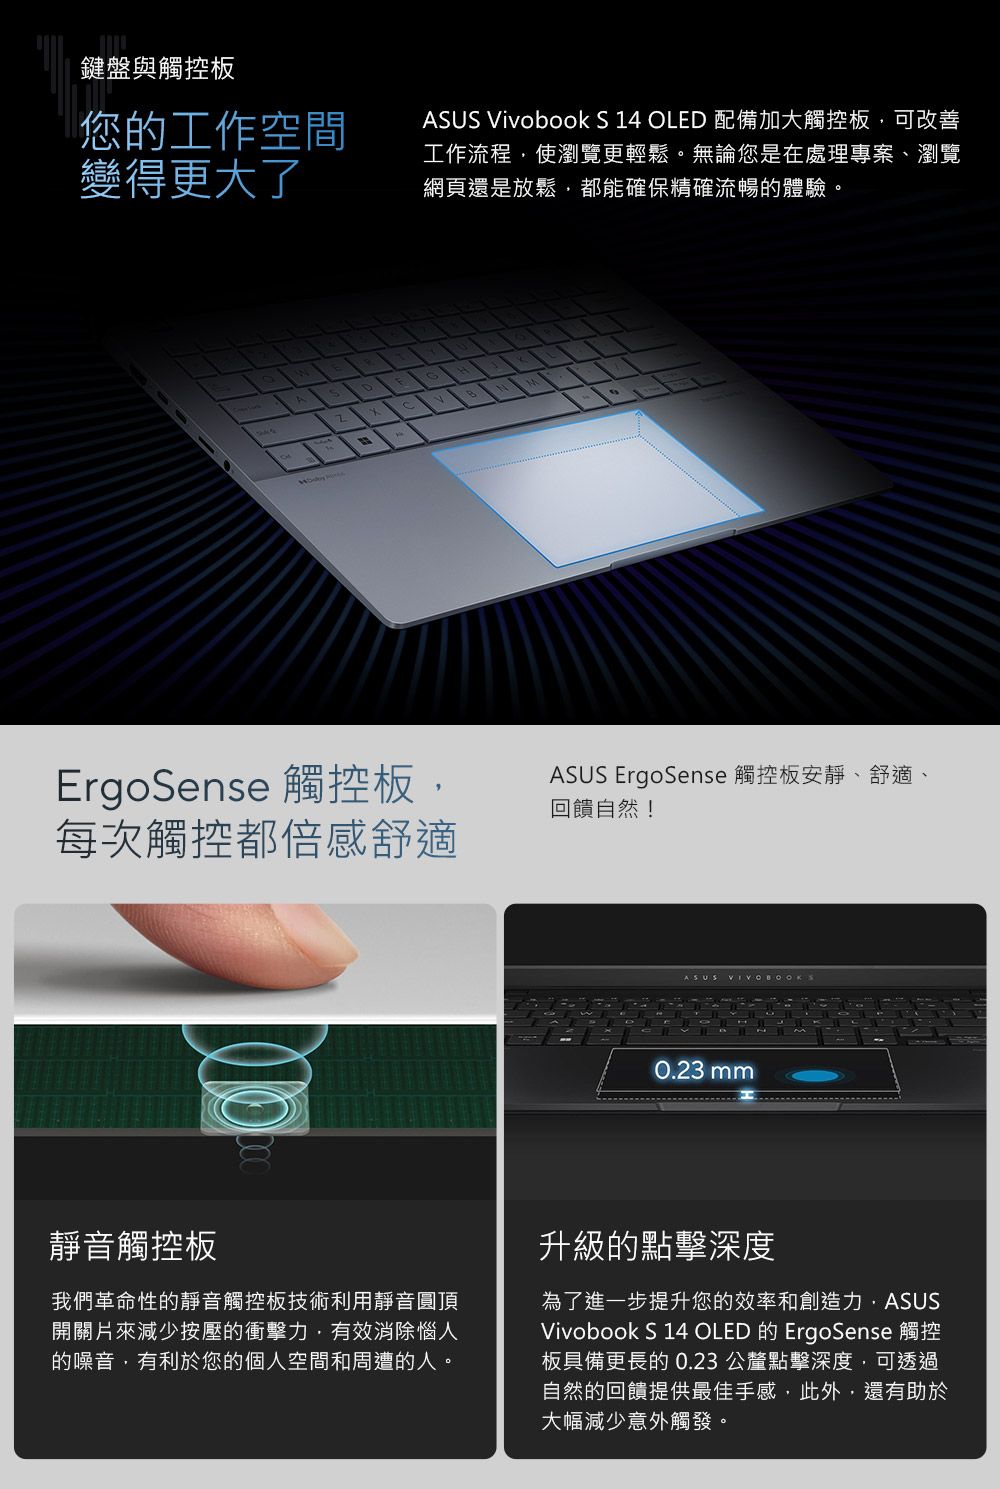 鍵盤與觸控板您的工作空間變得更大了ASUS Vivobook S 14 OLED 配備加大觸控板可改善工作流程使瀏覽更輕鬆。無論您是在處理專案、瀏覽網頁還是放鬆都能確保精確流暢的體驗。ErgoSense 觸控板,每次觸控都倍感舒適ASUS ErgoSense 觸控板安靜、舒適、回饋自然!ASUS0.23 mm靜音觸控板我們革命性的靜音觸控板技術利用靜音圓頂開關片來減少按壓的衝擊力,有效消除惱人的噪音,有利於您的個人空間和周遭的人。升級的點擊深度為了進一步提升您的效率和創造力,ASUSVivobook S 14 OLED ErgoSense板具備更長的0.23 公釐點擊深度,可透過自然的回饋提供最佳手感,此外,還有助於大幅減少意外觸發。